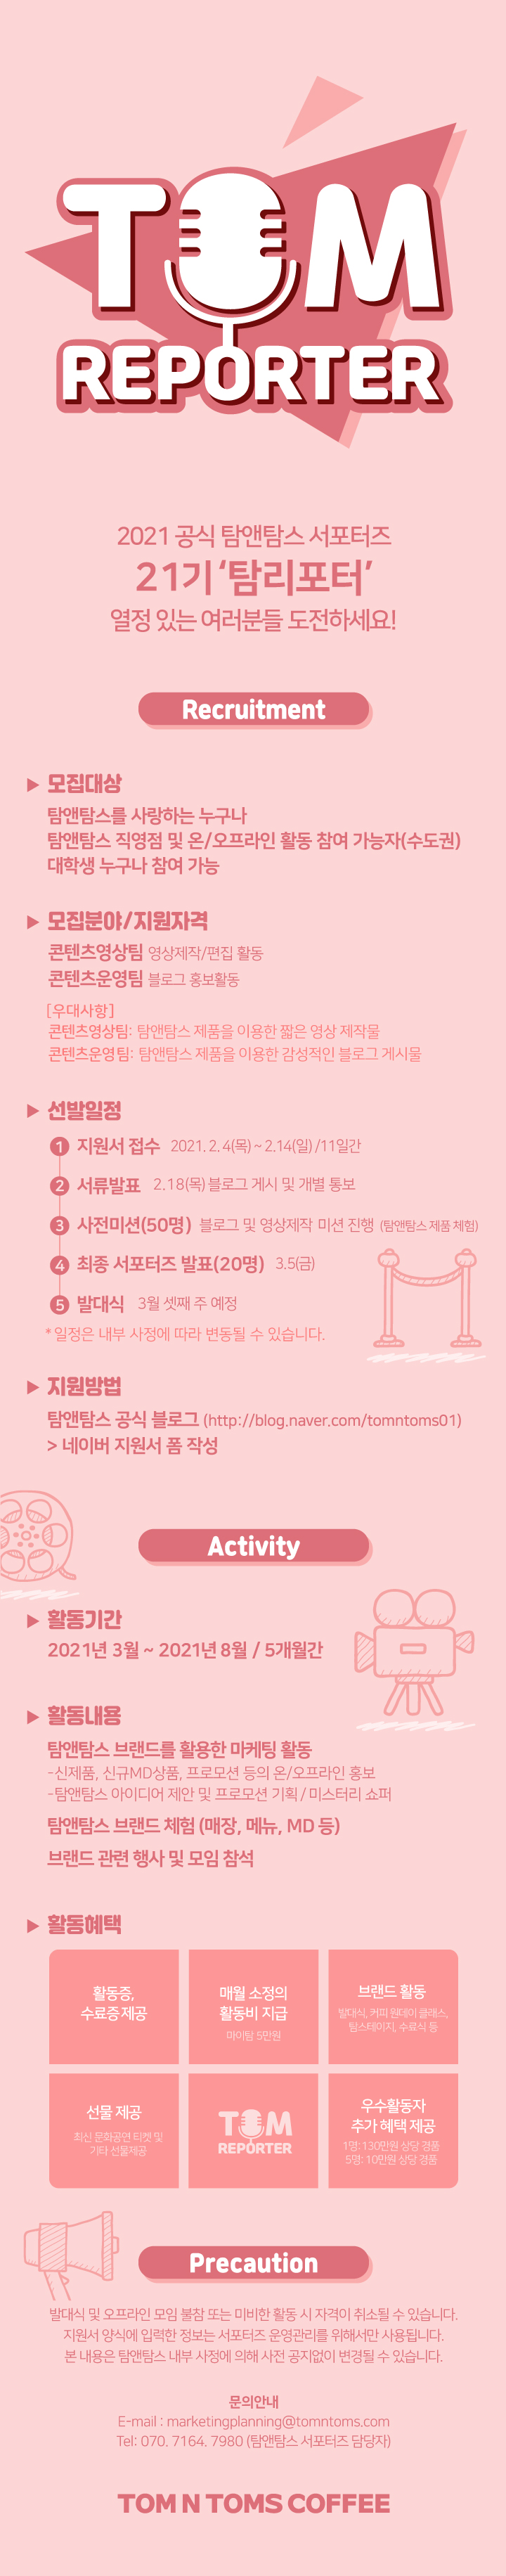 [공유] 탐앤탐스 공식 서포터즈 탐리포터 21기 모집!